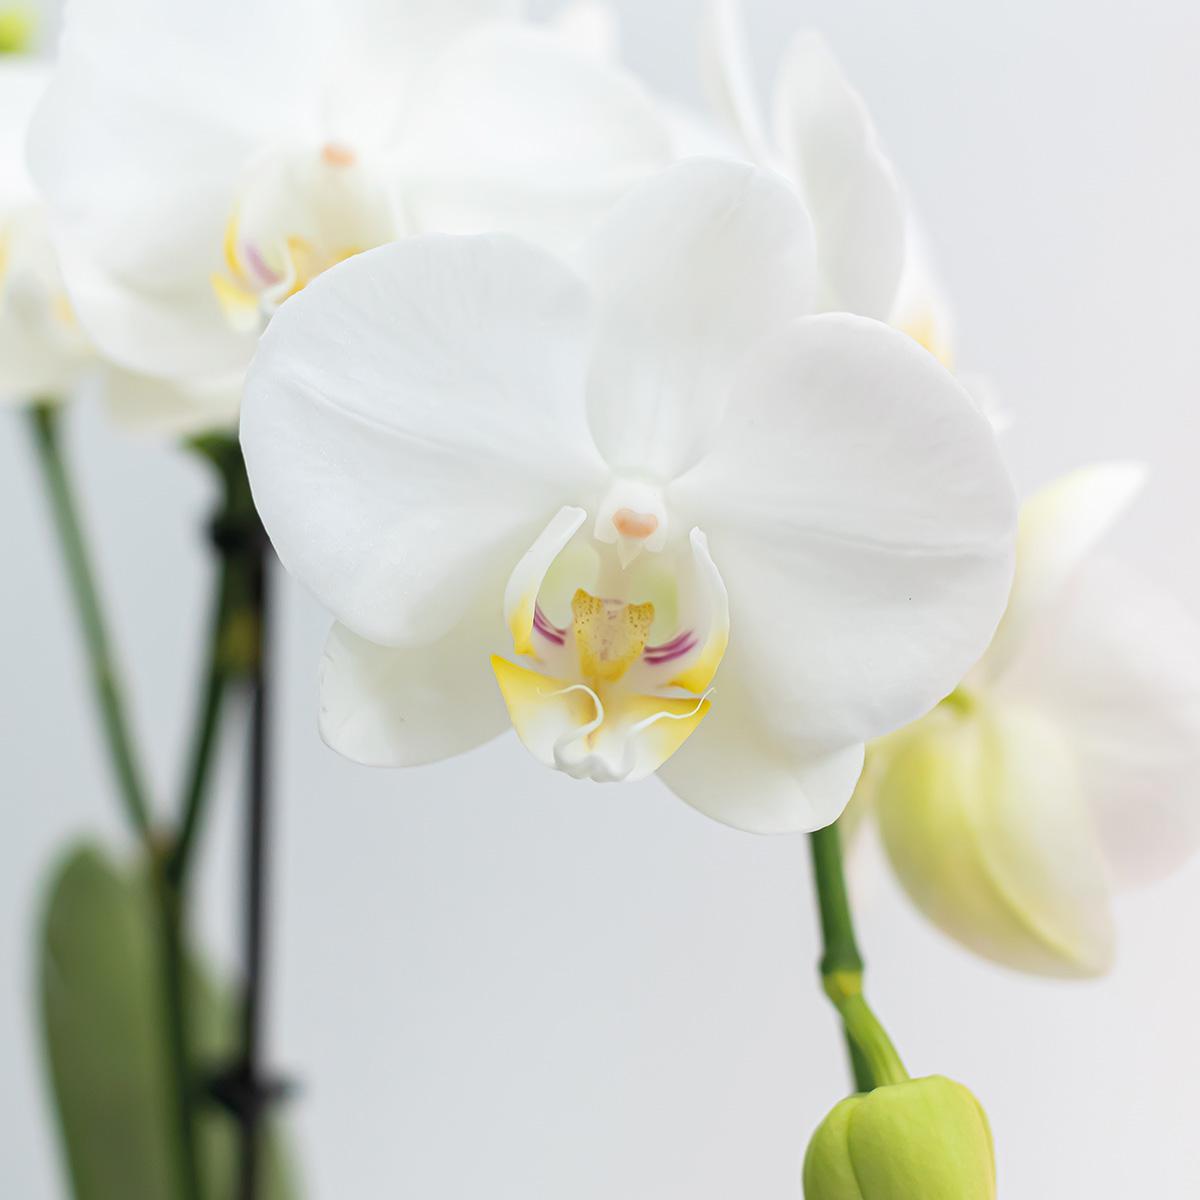 Kolibri Orchids | COMBI DEAL van 2 witte Phalaenopsis orchideeën - Amabilis - potmaat Ø9cm | bloeiende kamerplant - vers van de kweker